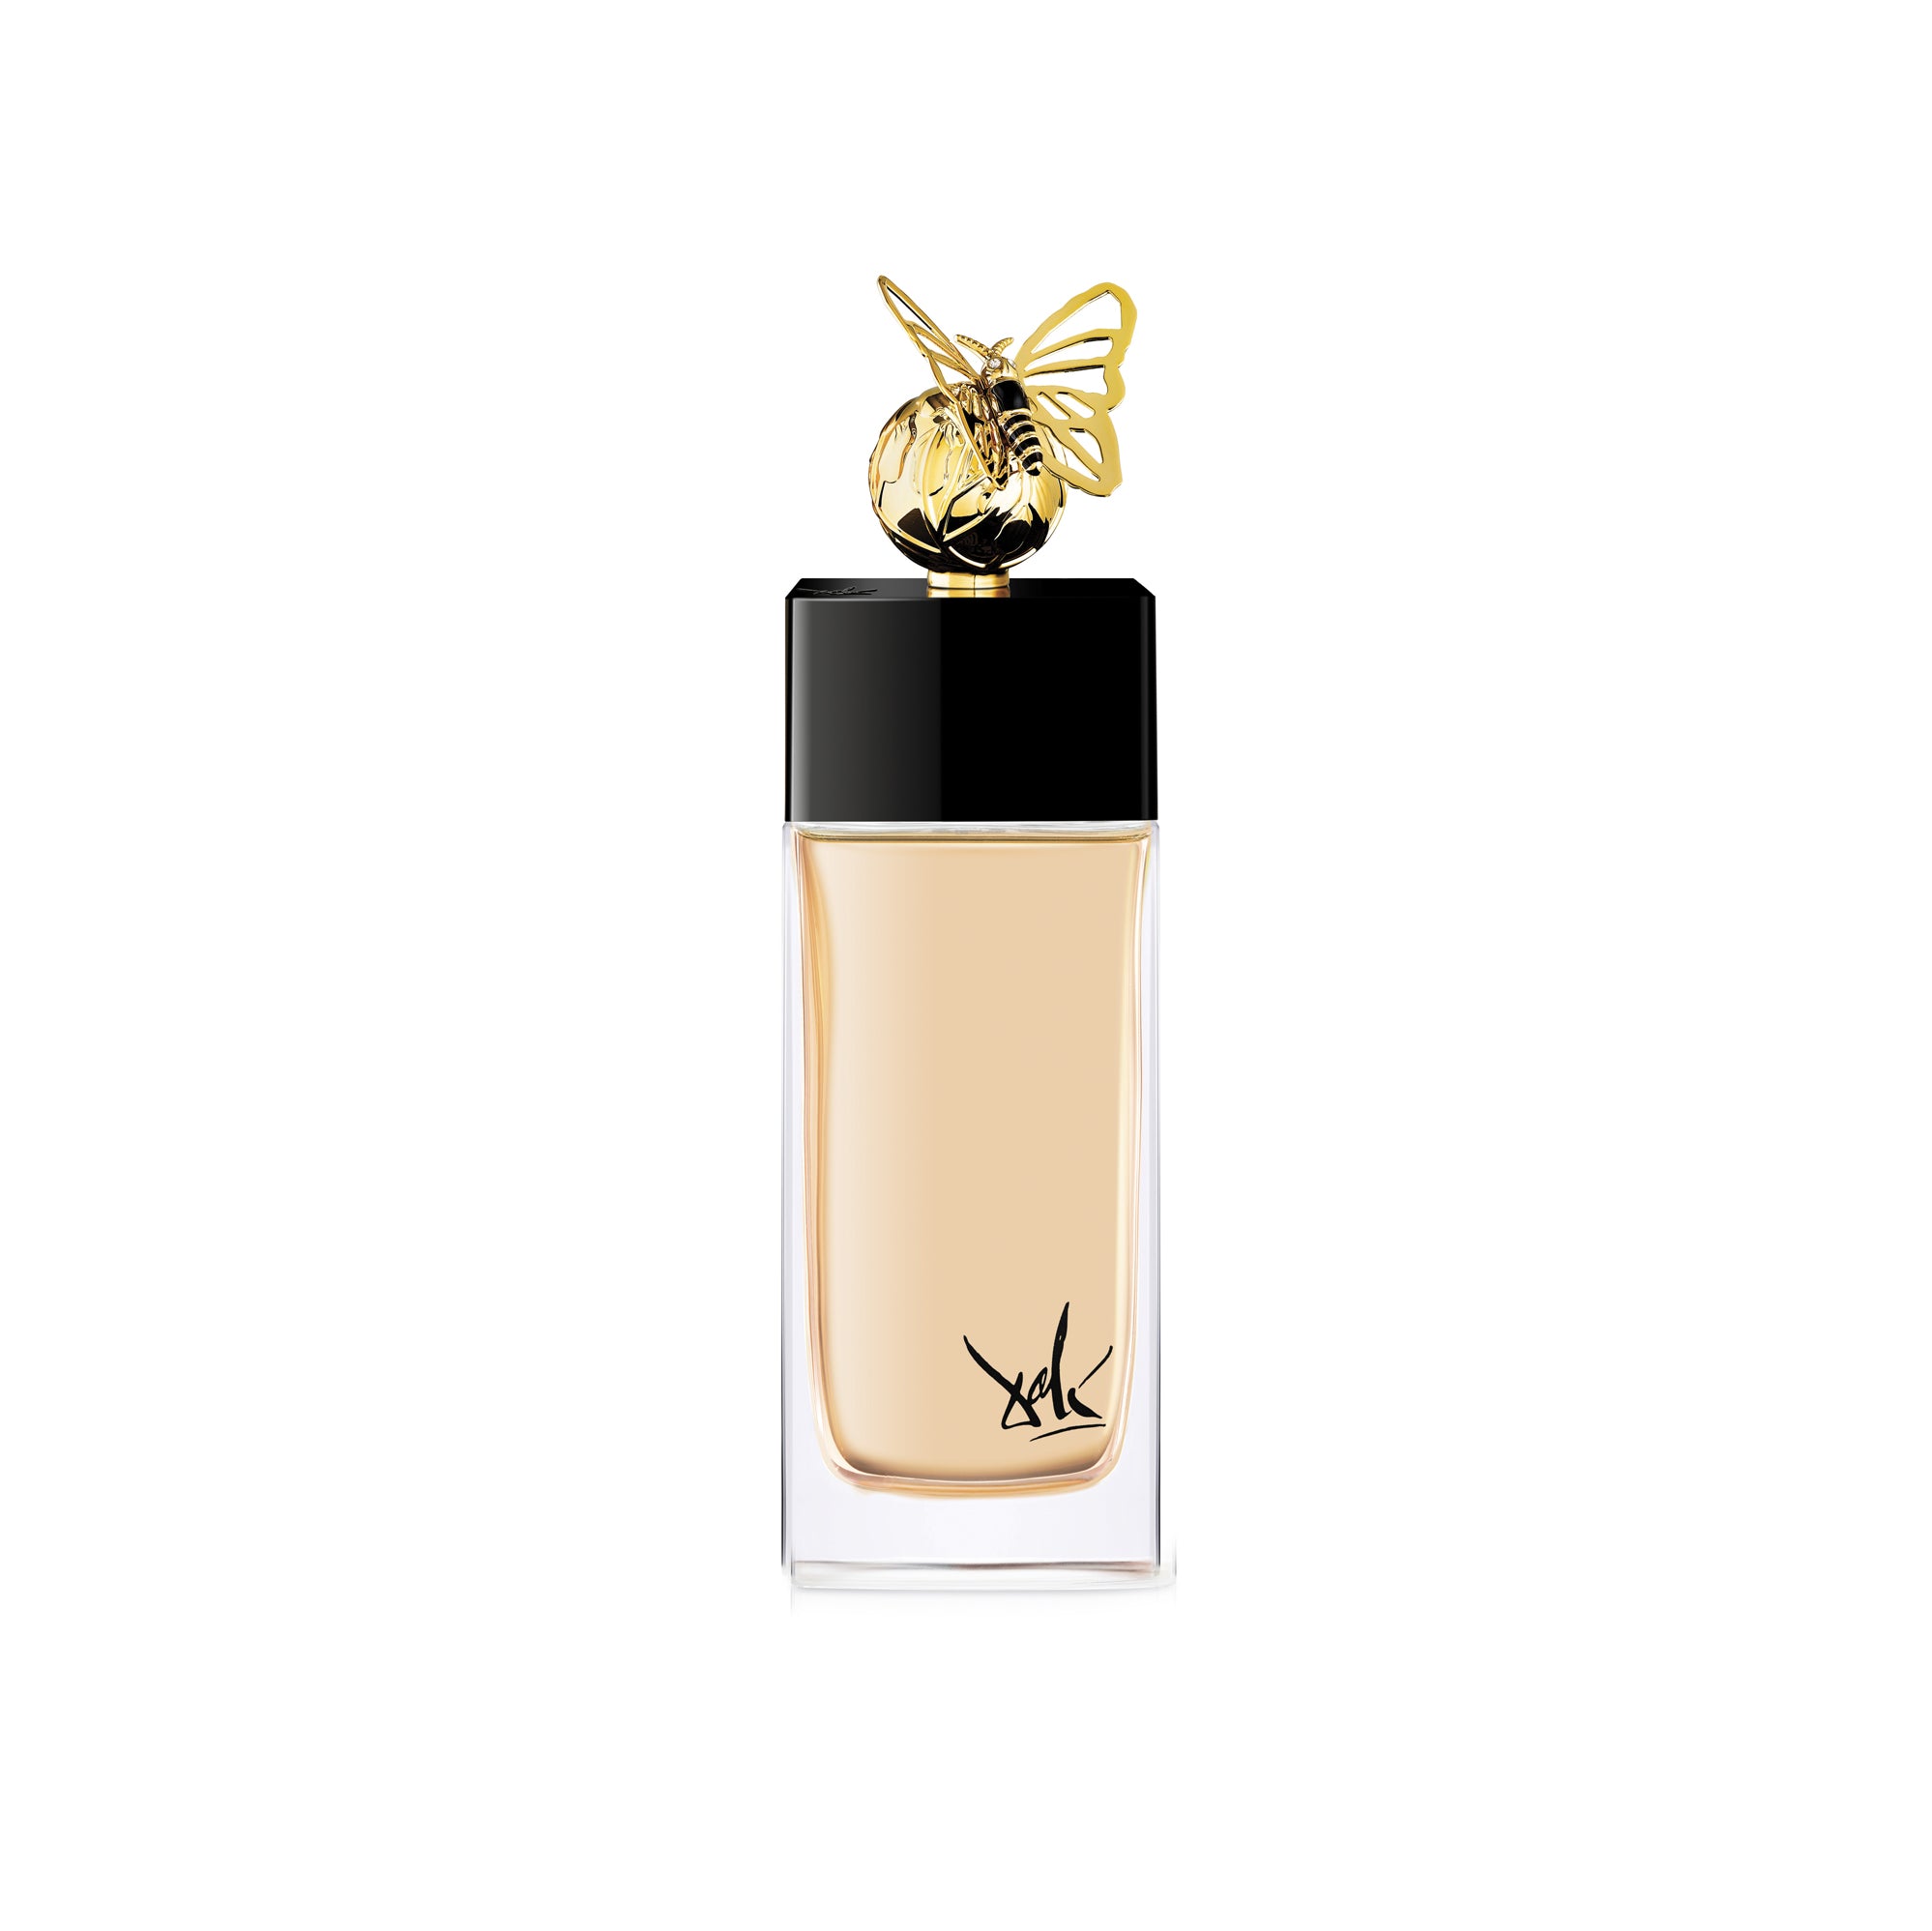 Voyage Onirique Du Papillon De Vie (The Butterfly) 100ml Eau de Parfum Bottle by Dalí Haute Parfumerie